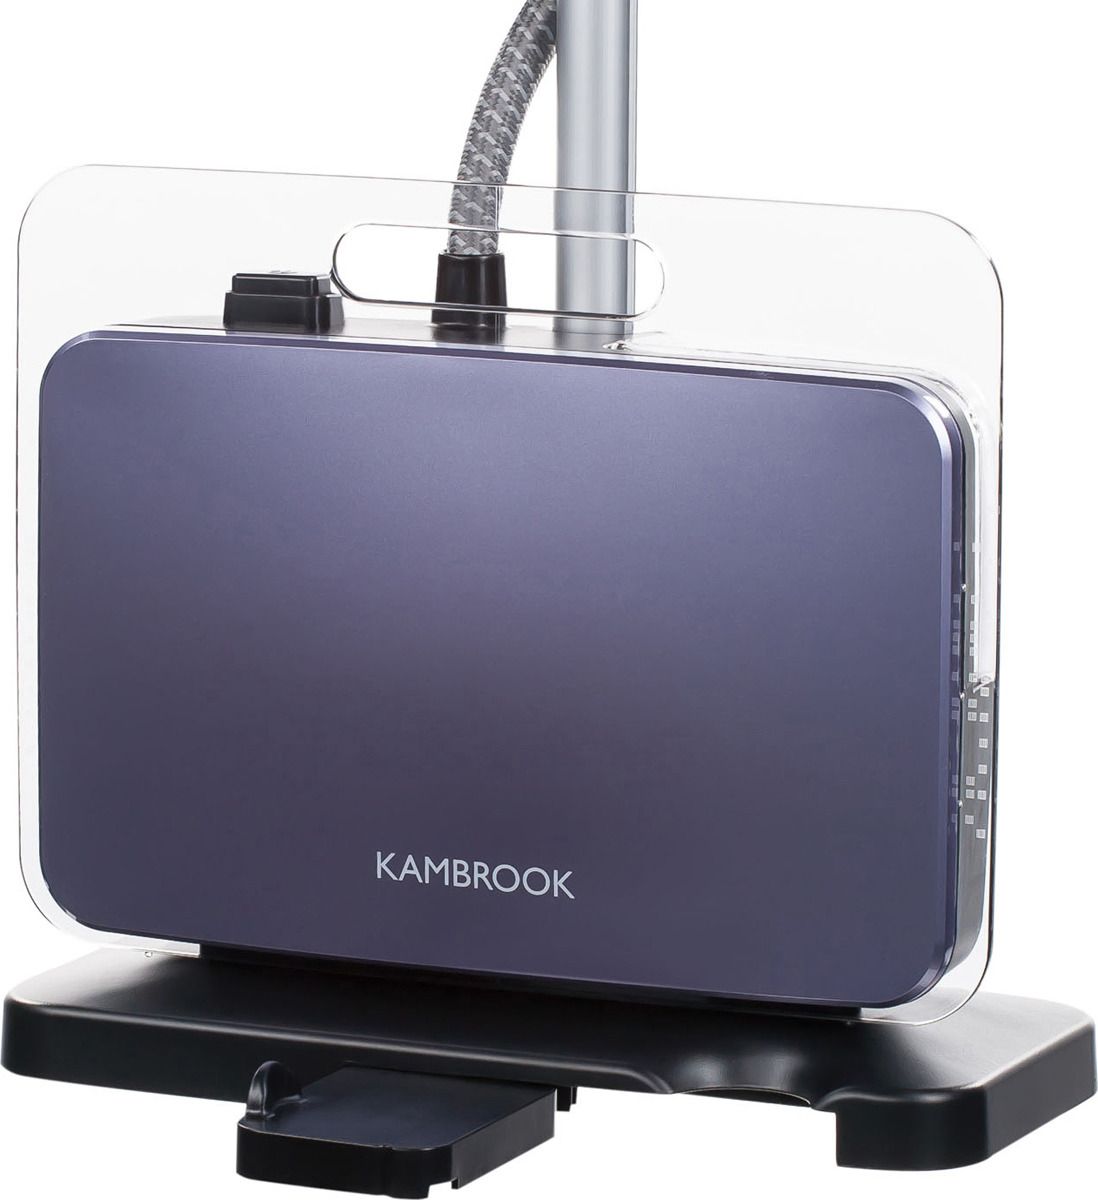    Kambrook AGS400, Purple